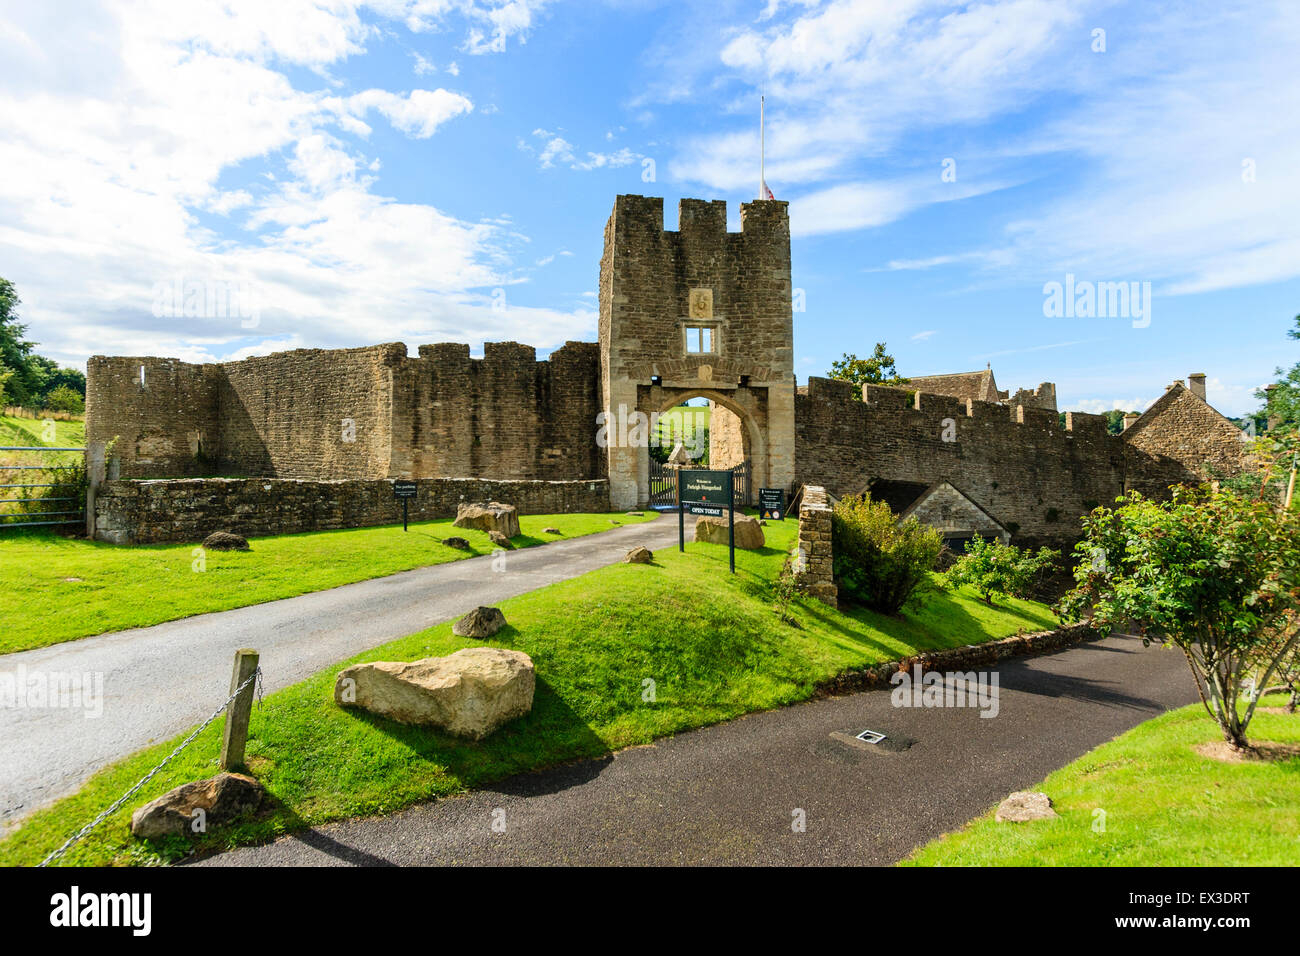 Le rovine della Farleigh Hungerford castello. Il XIV secolo rivellino est, l'ingresso principale al castello con la cortina esterna e la parete di cielo blu. Foto Stock